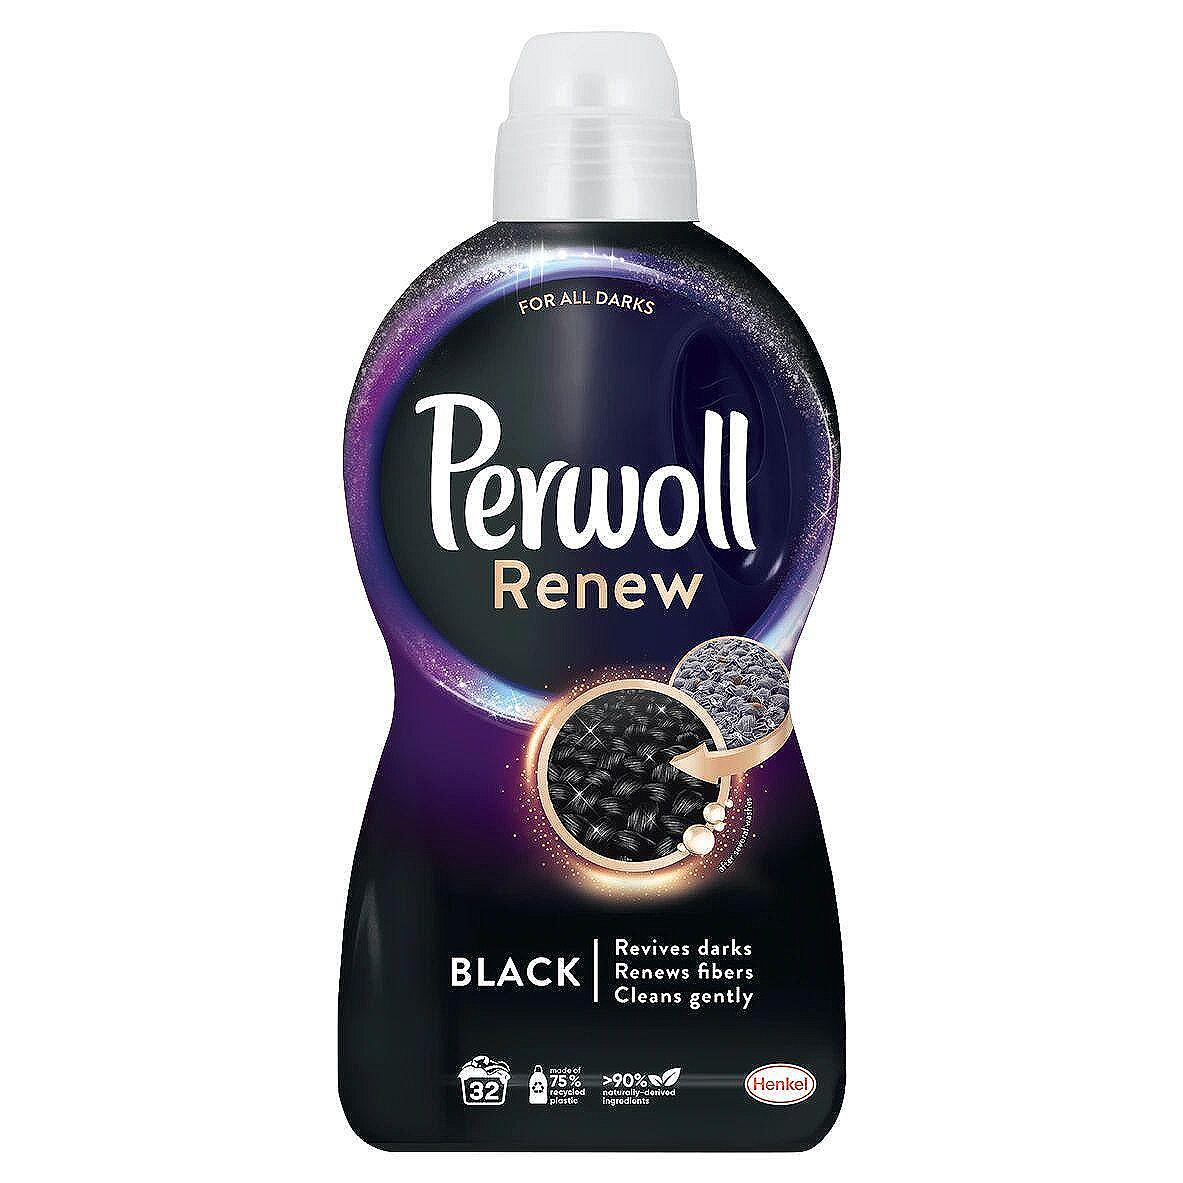 Perwoll Renew Black течен перилен препарат, 32 пранета | 1.92 л